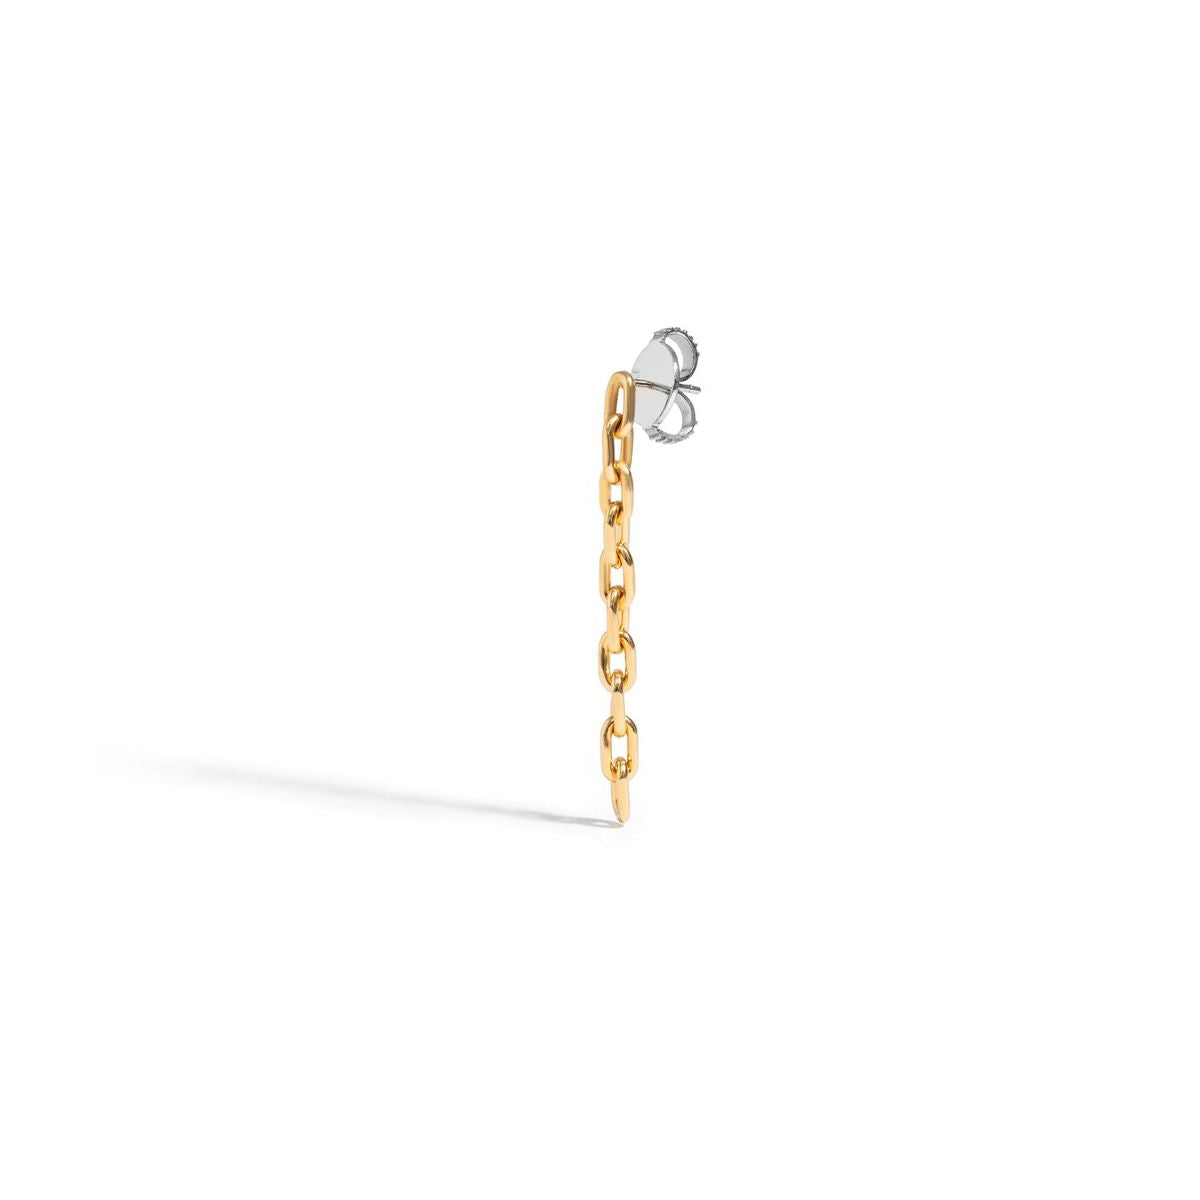 Brinco Chain - Unitário | Prata Com Ouro Amarelo 18k